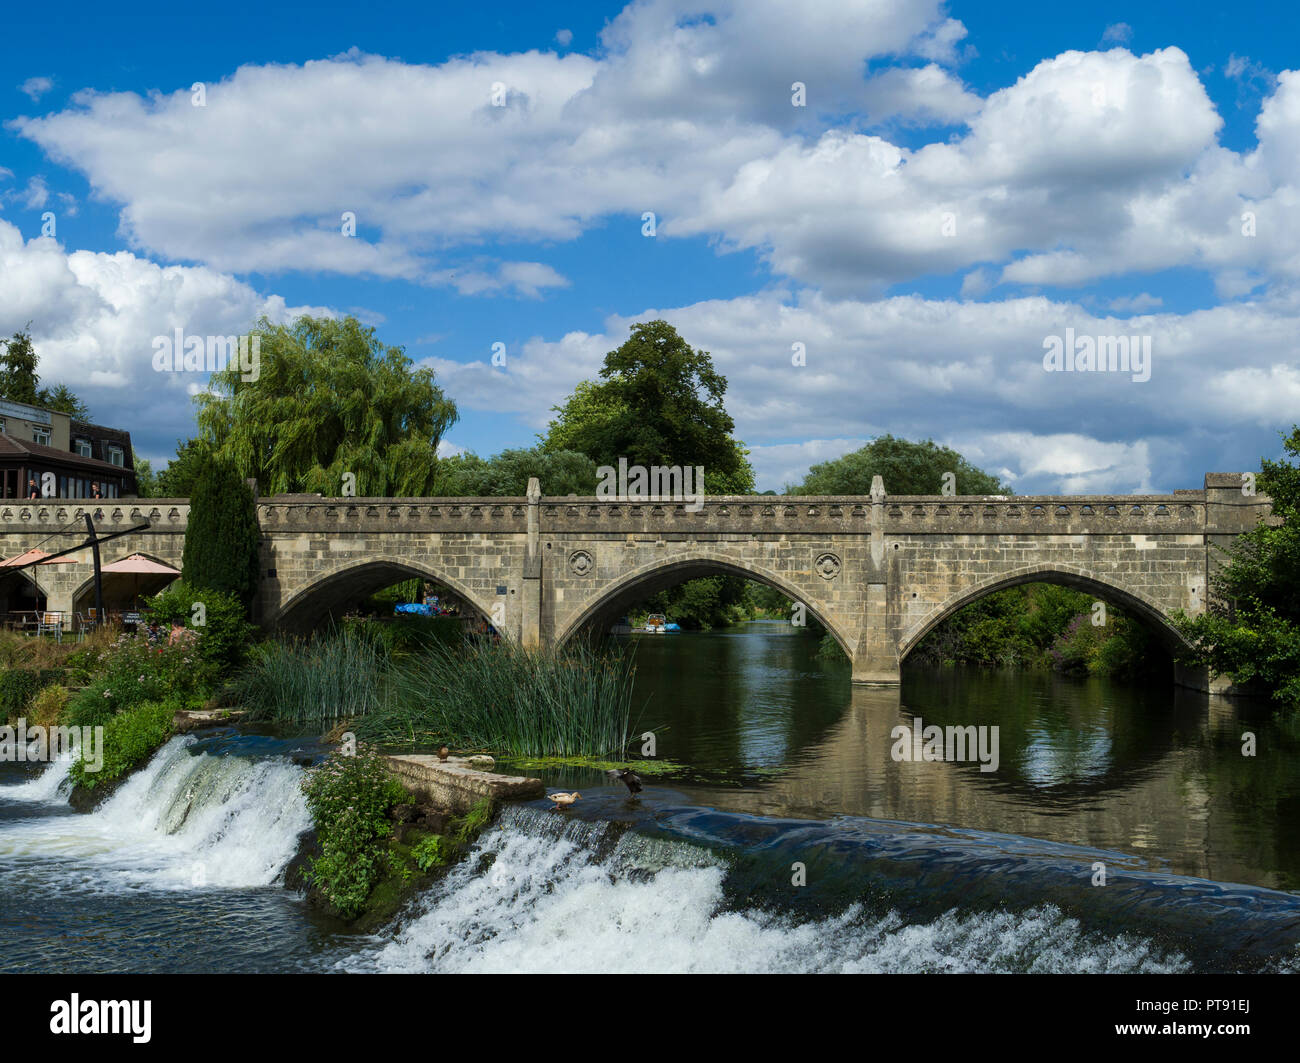 Batheaston pont à péage traversant la rivière Avon à Bathampton, Bath, Somerset, England, UK Banque D'Images